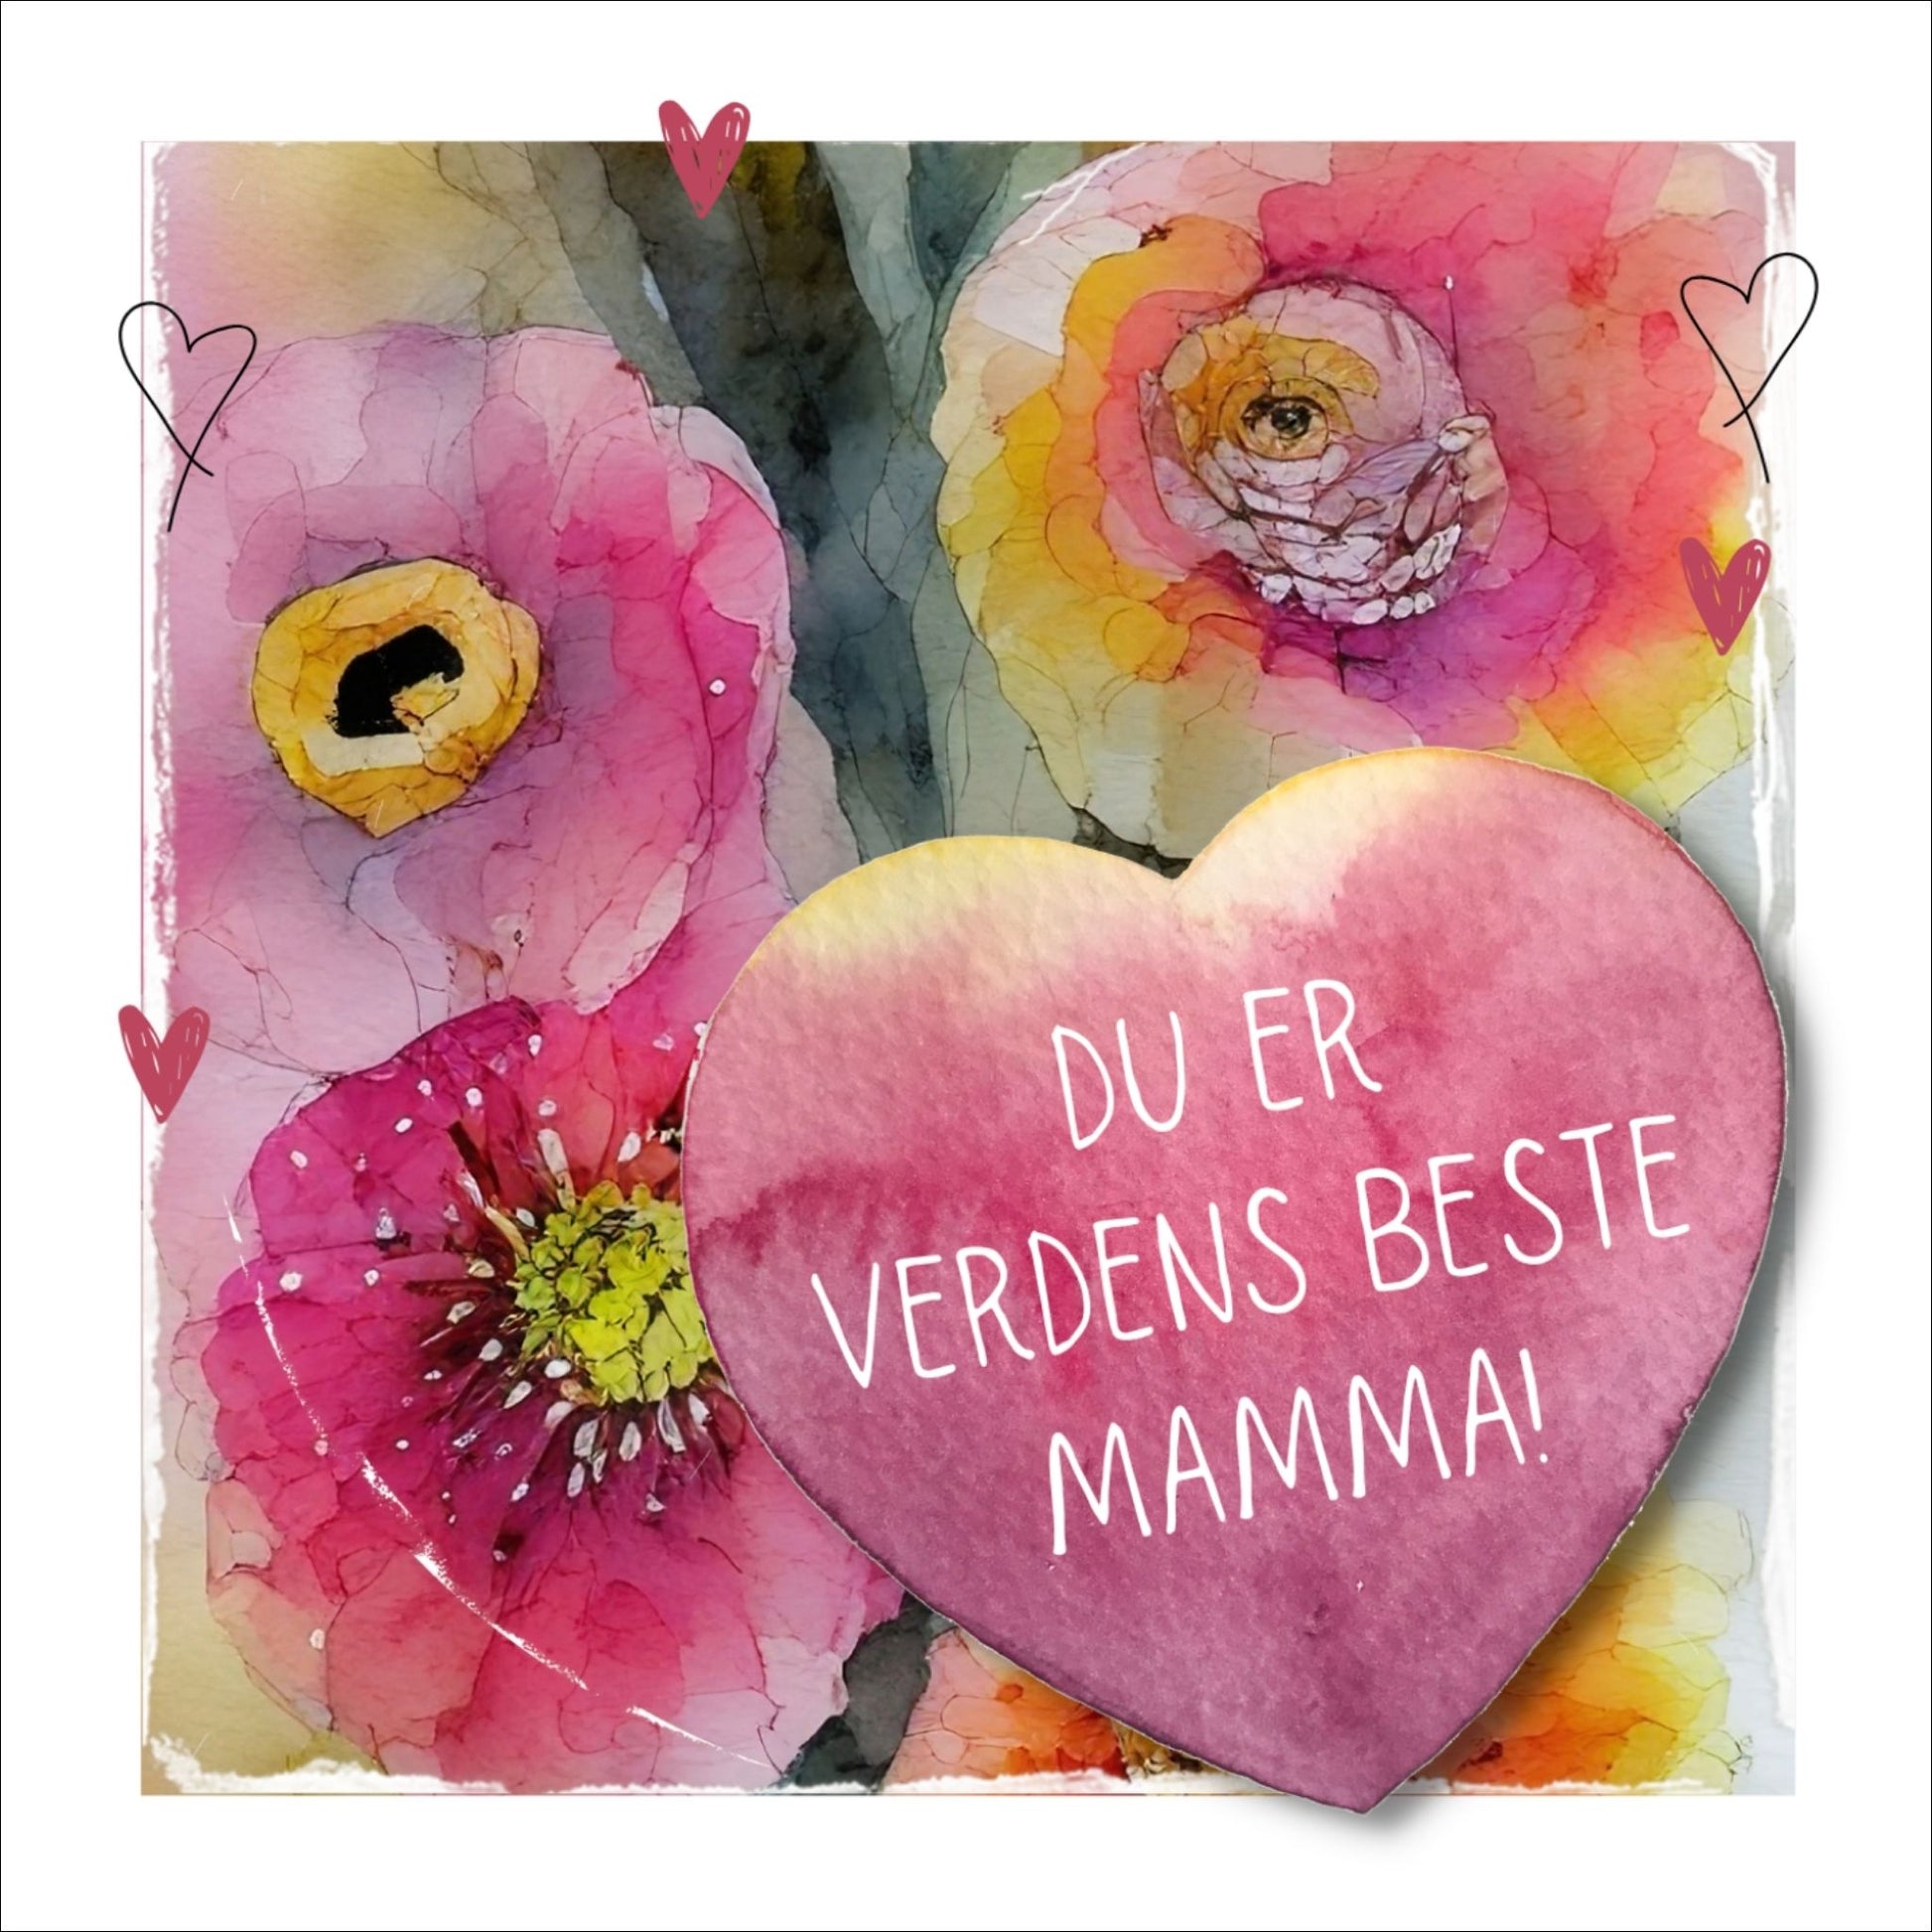 Grafisk plakat med et rosa hjerte påført tekst "Du er verdens beste mamma". Bagrunn i cerise og guloransje blomster. Kortet har en hvit kant runt på 1,5 cm.